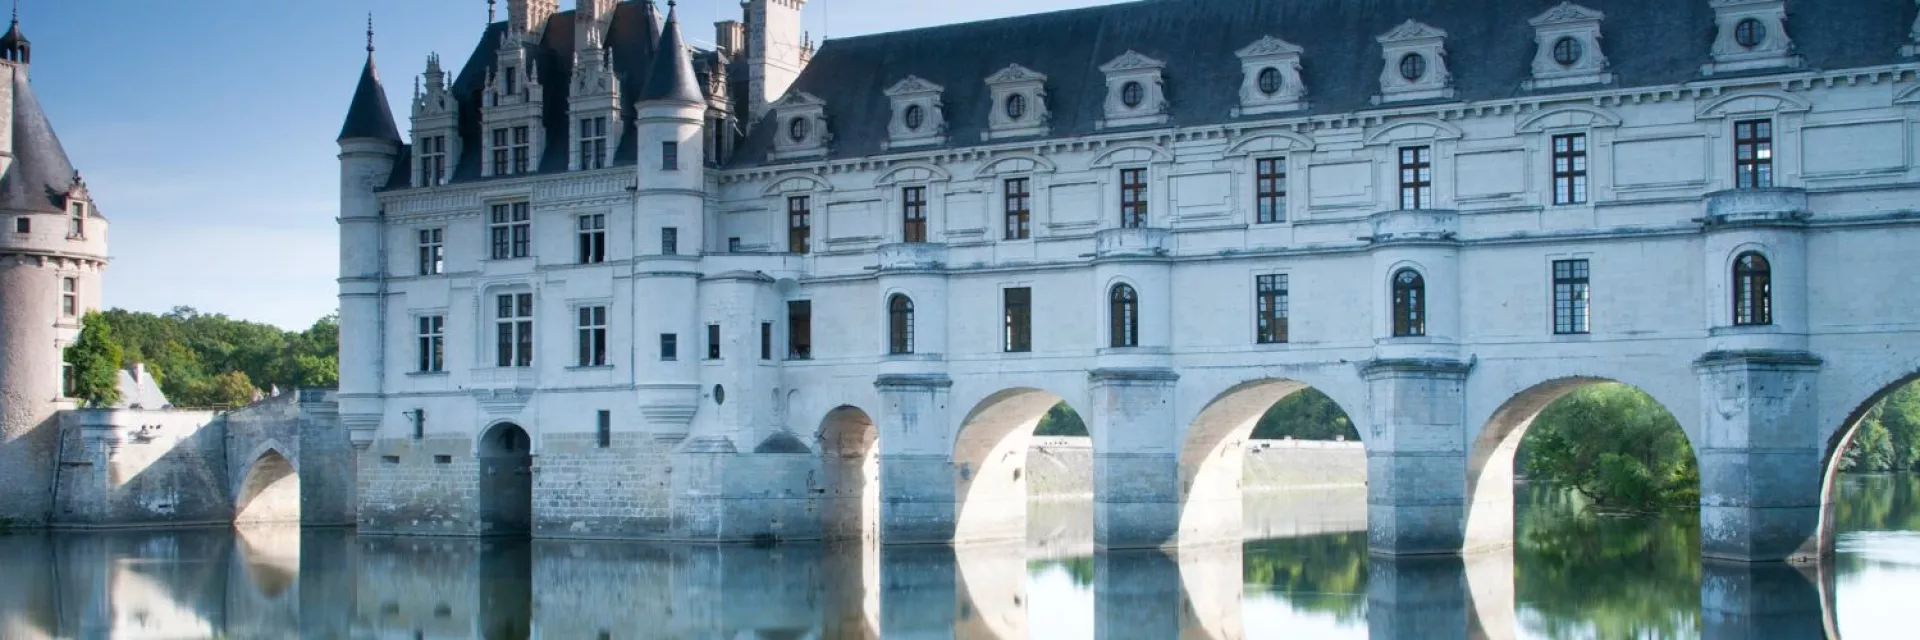 Bannière château de Chenonceau sur le Cher dans la Loire